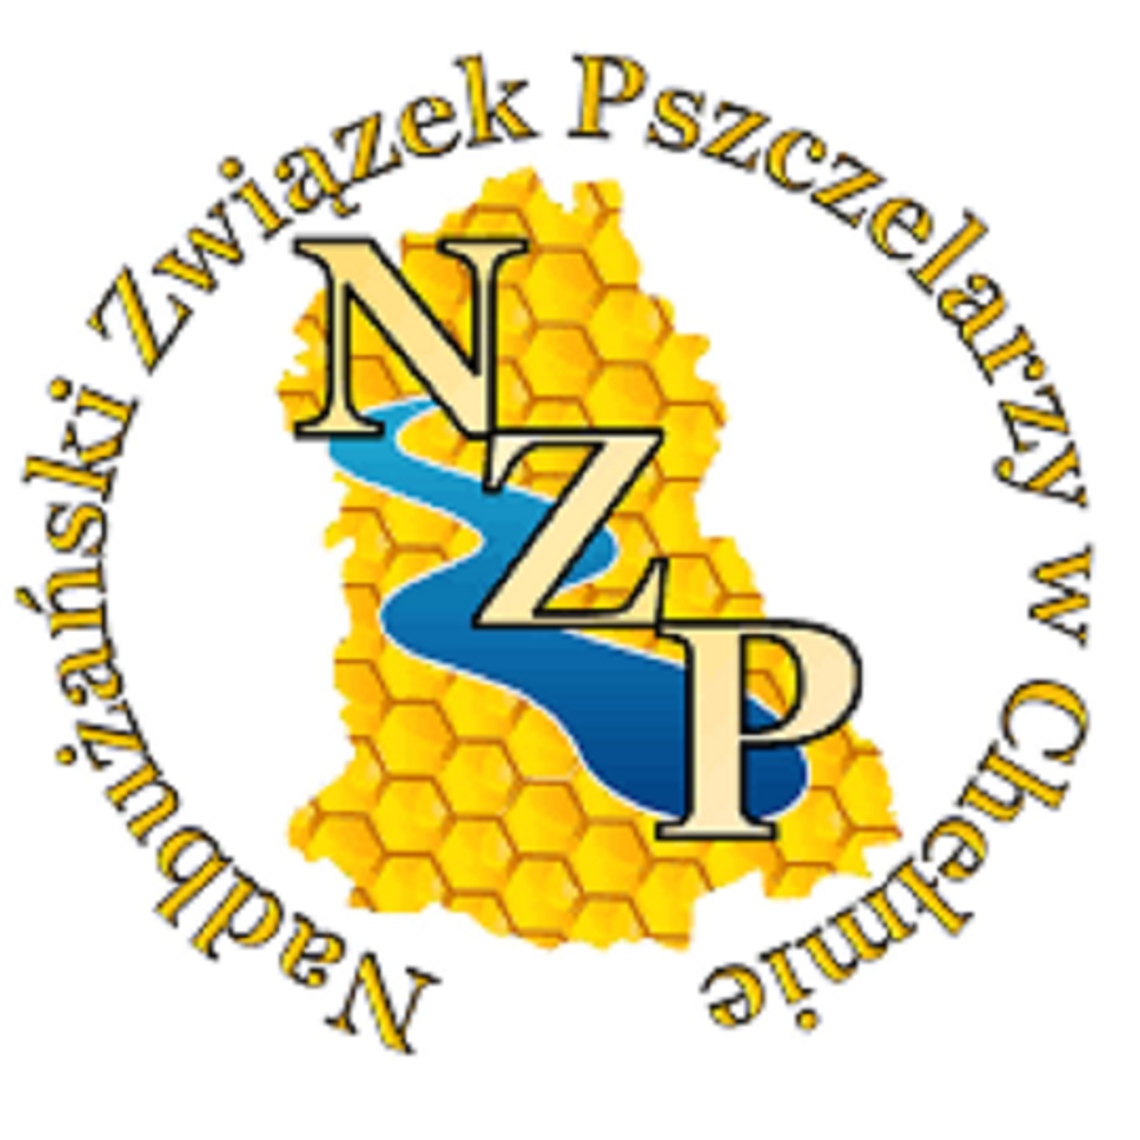 Wielki dzień pszczół. Rozmowa ze Sławomirem Padowskim - prezesem NZP Chełm